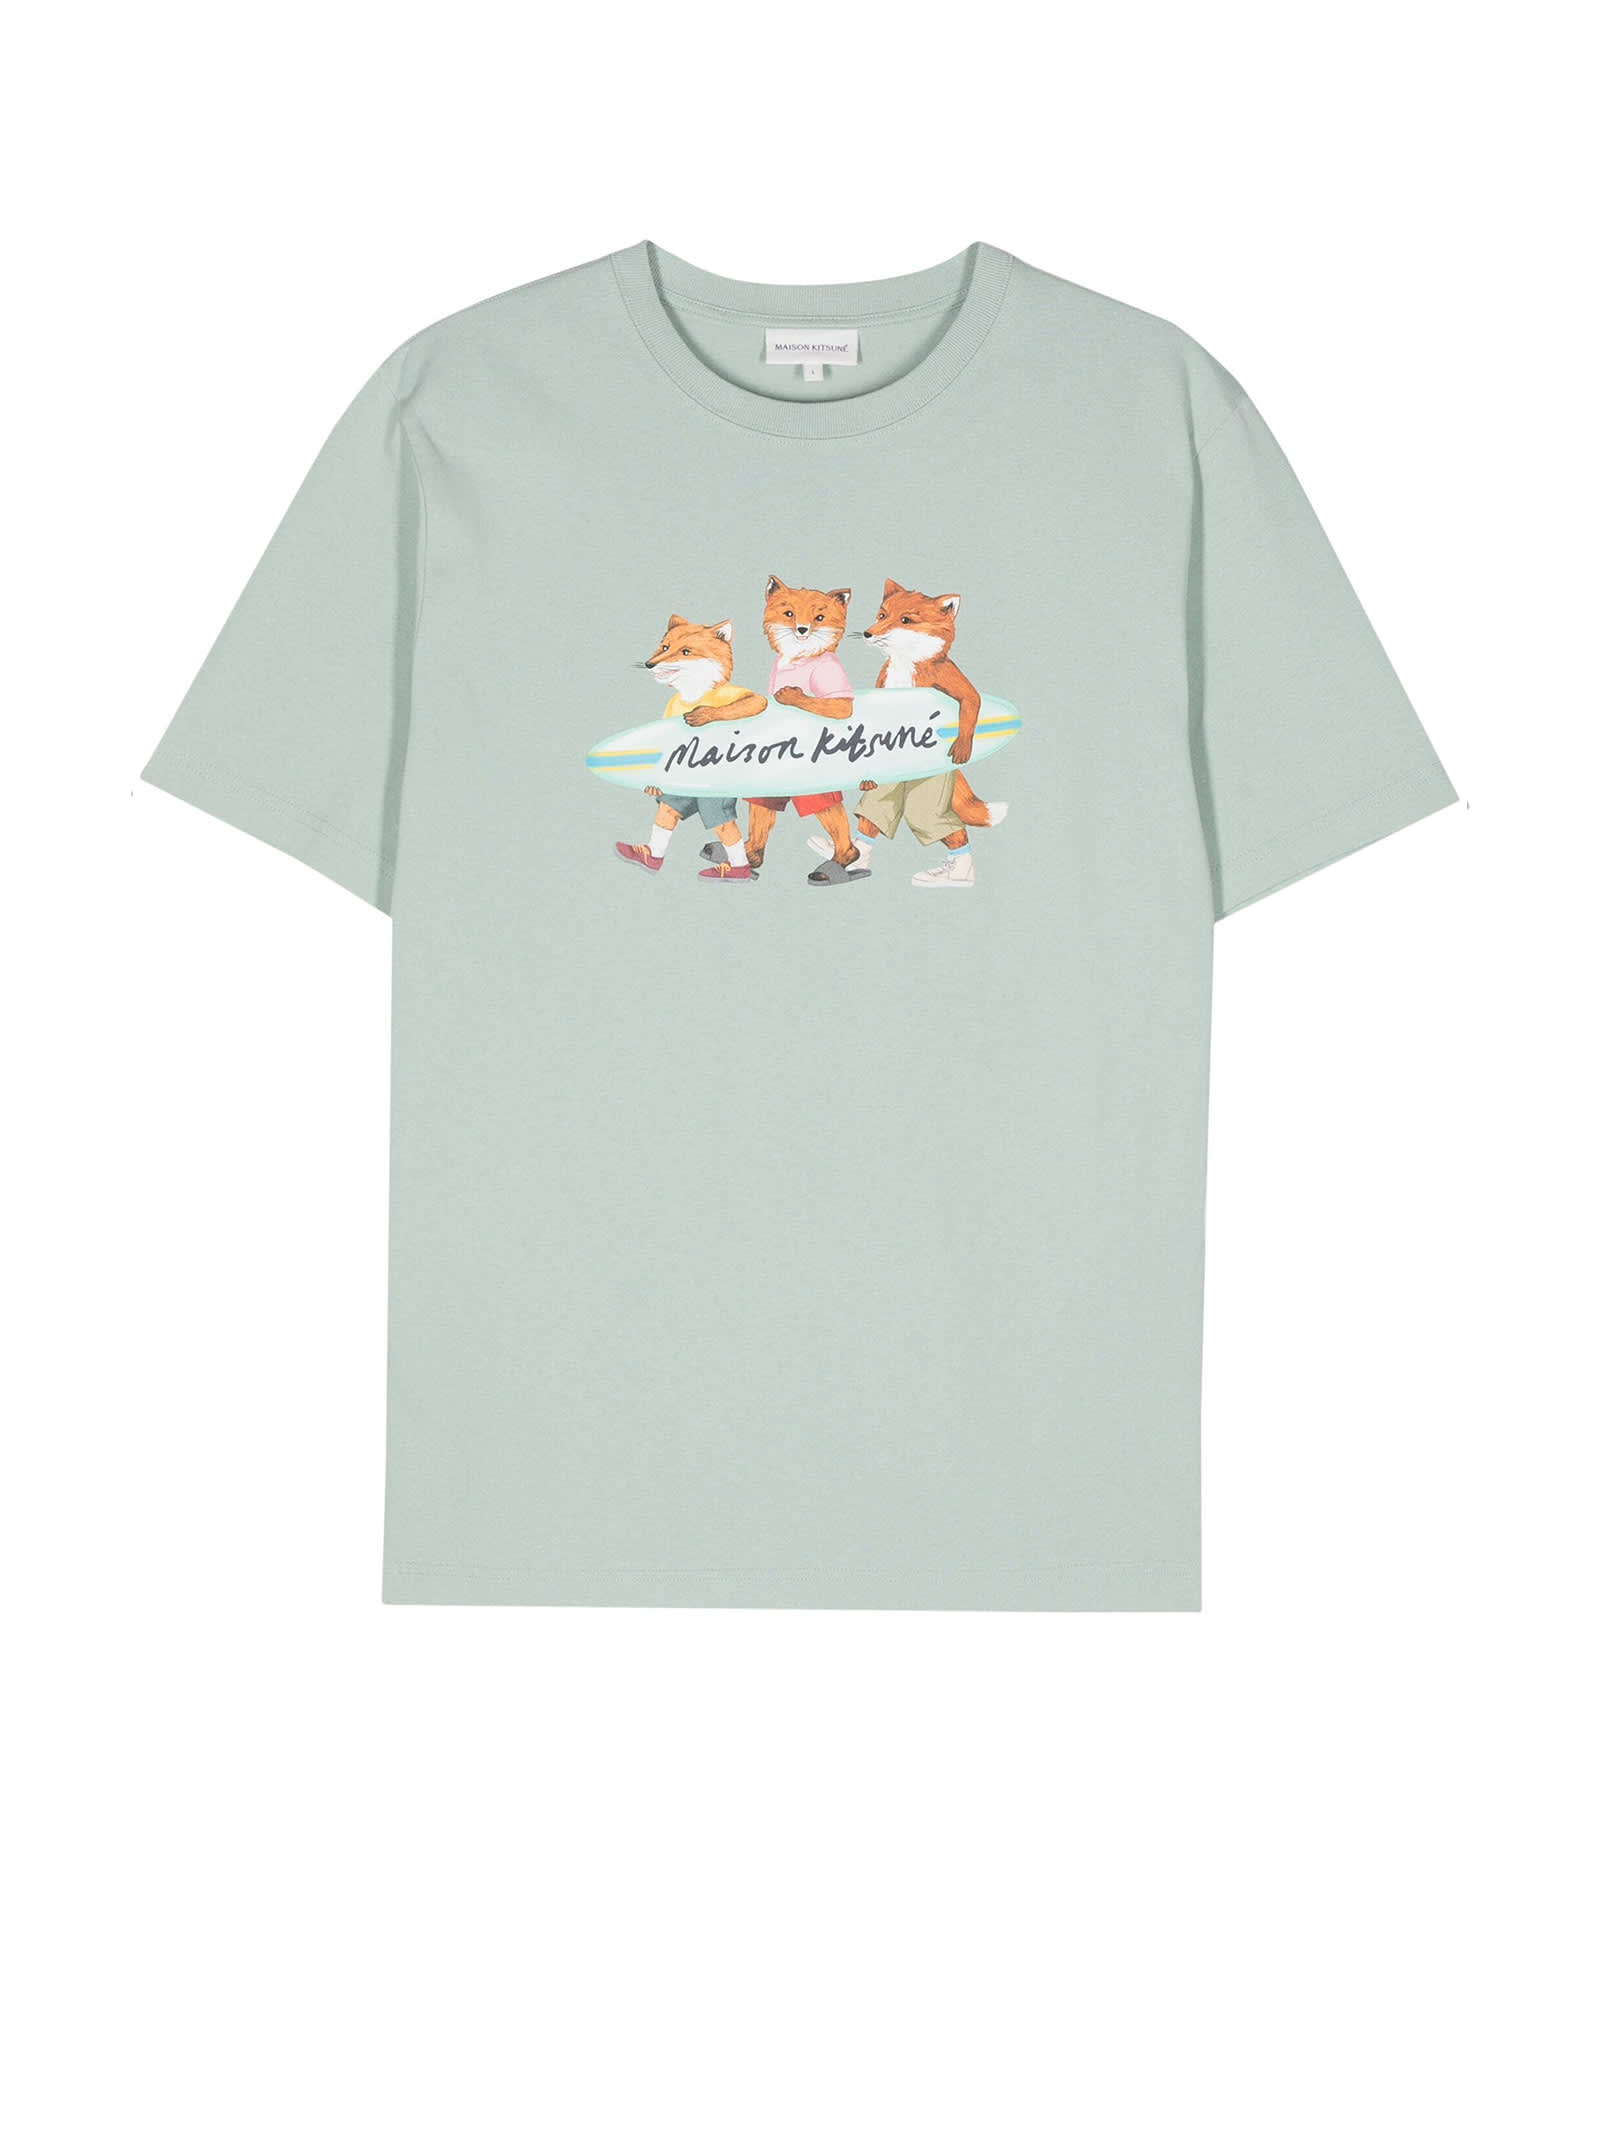 Maison Kitsuné T-Shirt